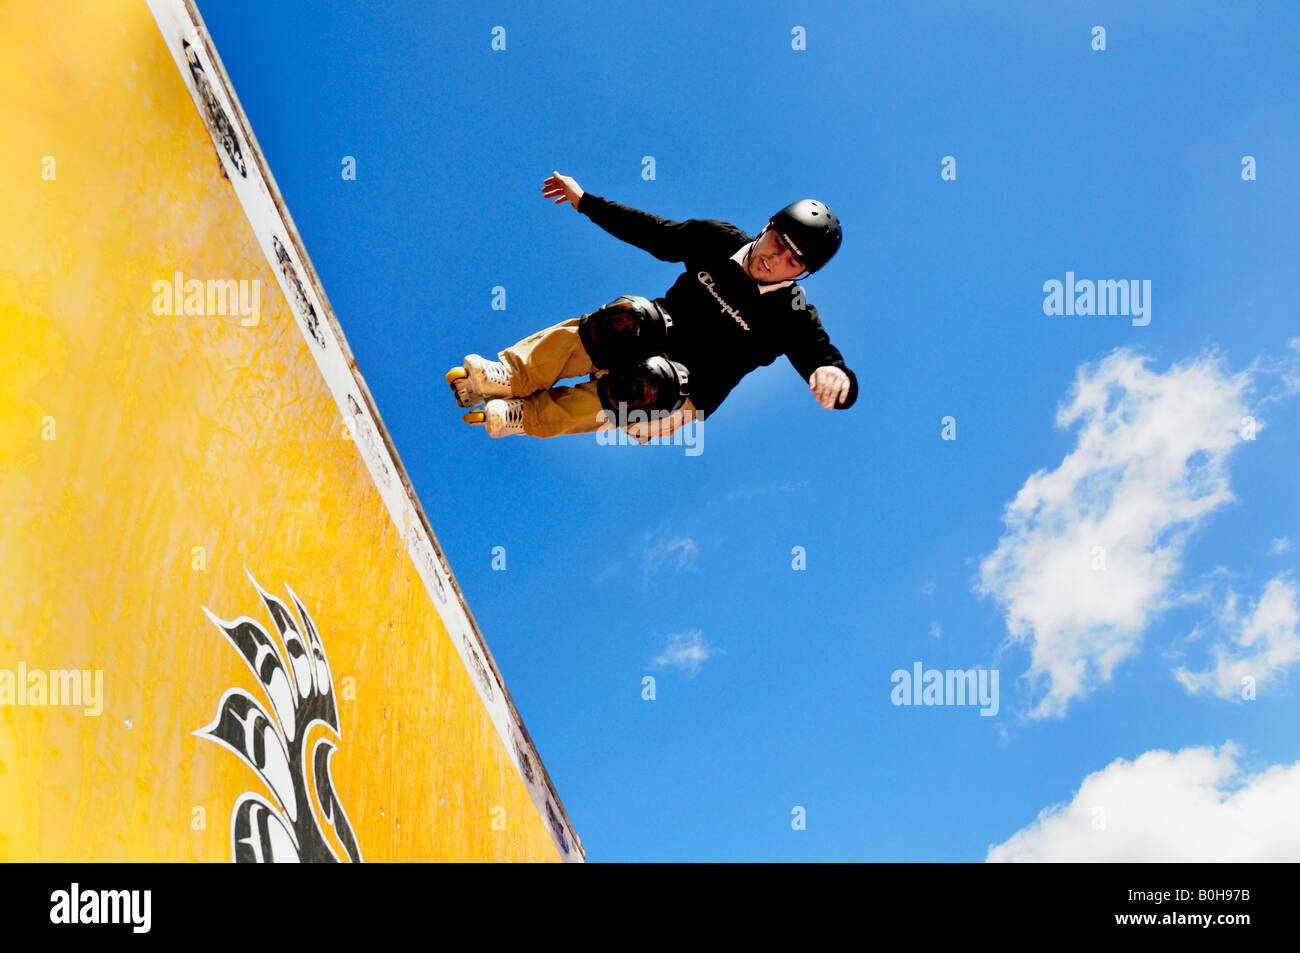 Skater, skateboarder doing jumps, half pipe Stock Photo